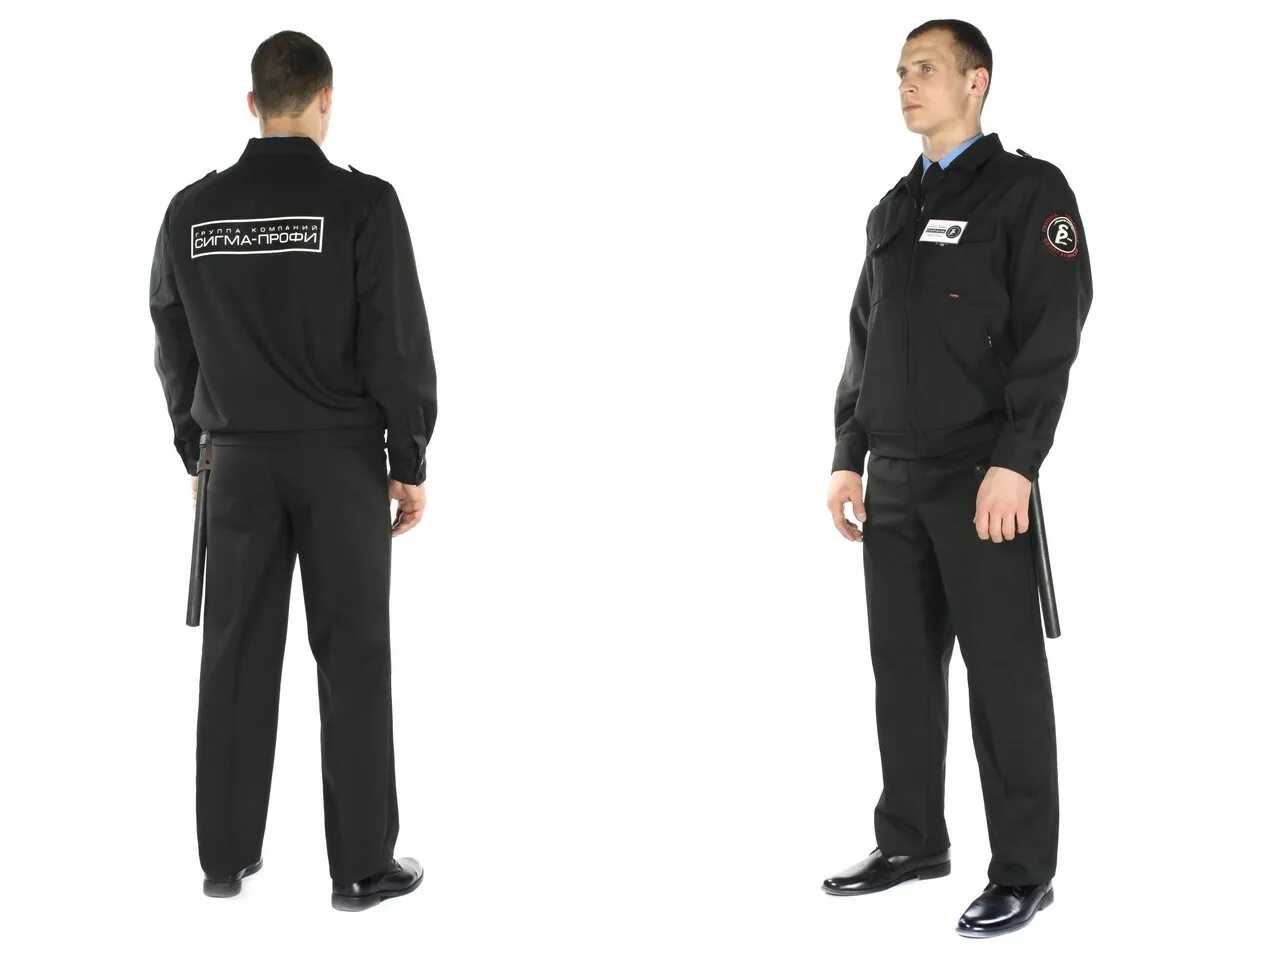 Закупки охрана. Сигма профи одежда для охранников. Форма охранника. Форма сотрудника охраны. Форменная одежда для охраны.